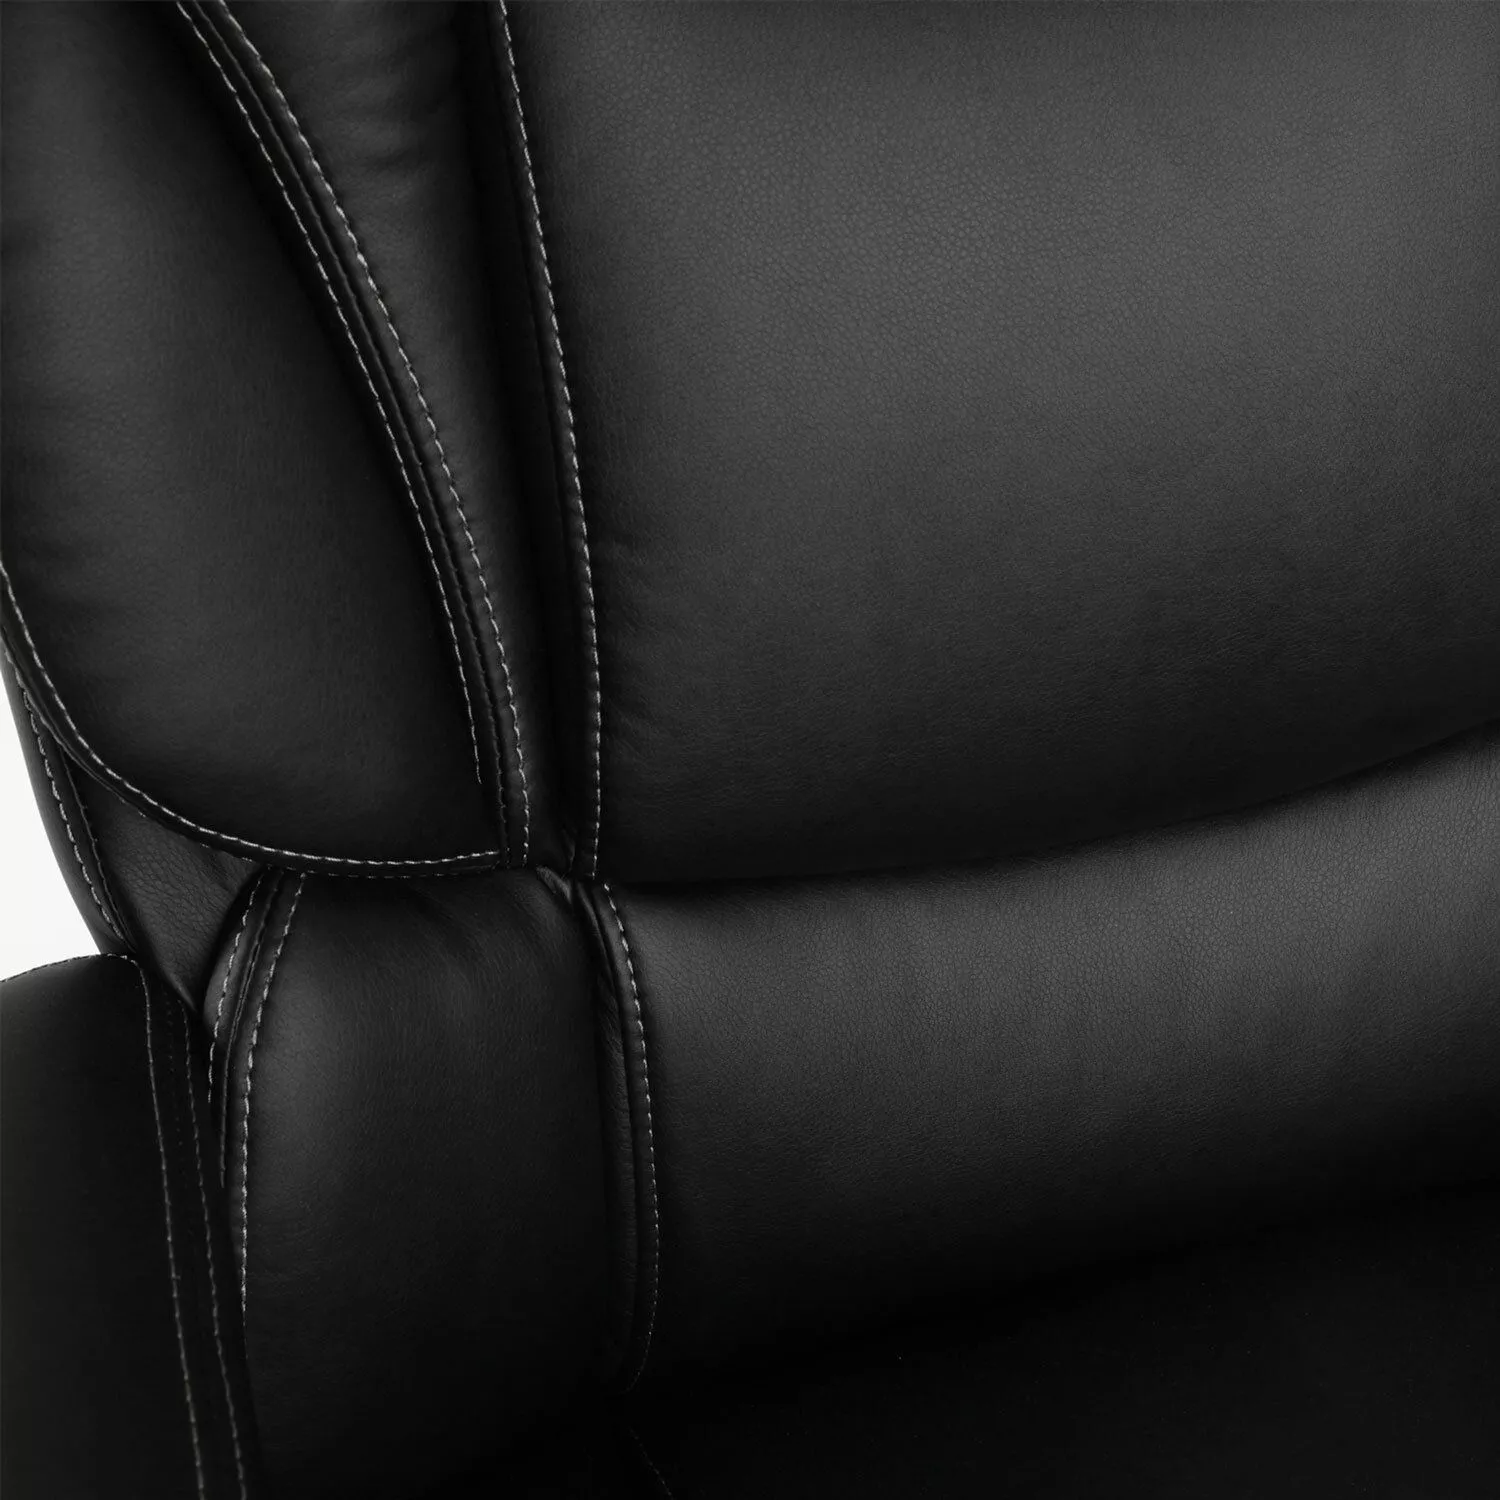 Кресло офисное для руководителя BRABIX PREMIUM Rest EX-555 Черный 531938